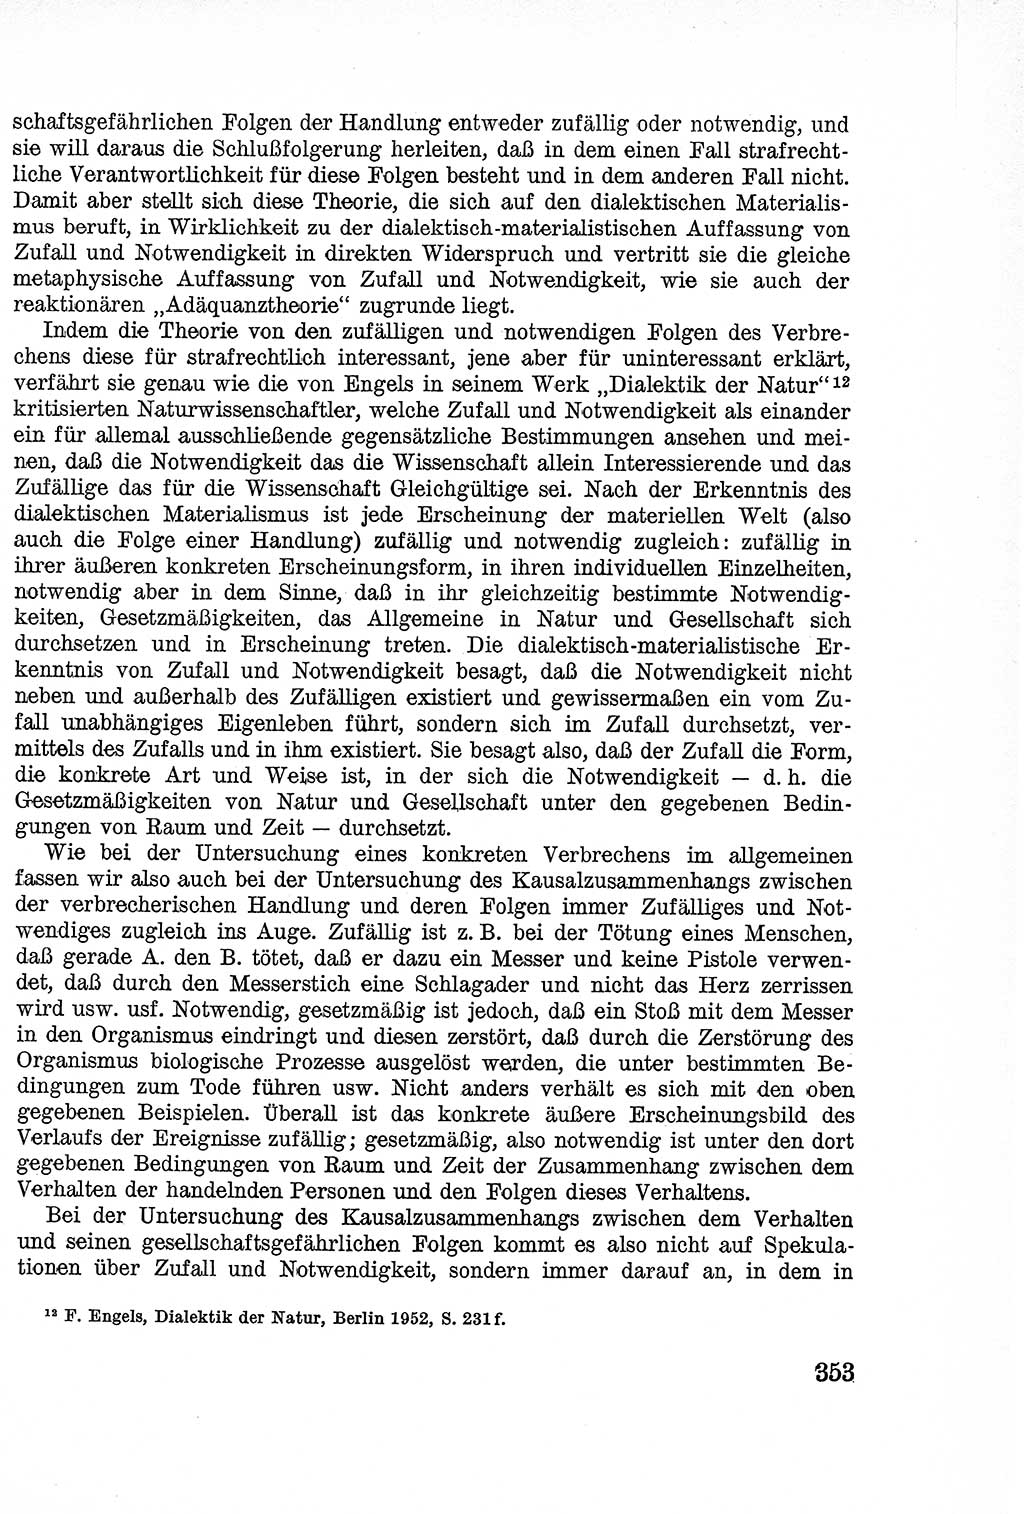 Lehrbuch des Strafrechts der Deutschen Demokratischen Republik (DDR), Allgemeiner Teil 1957, Seite 353 (Lb. Strafr. DDR AT 1957, S. 353)